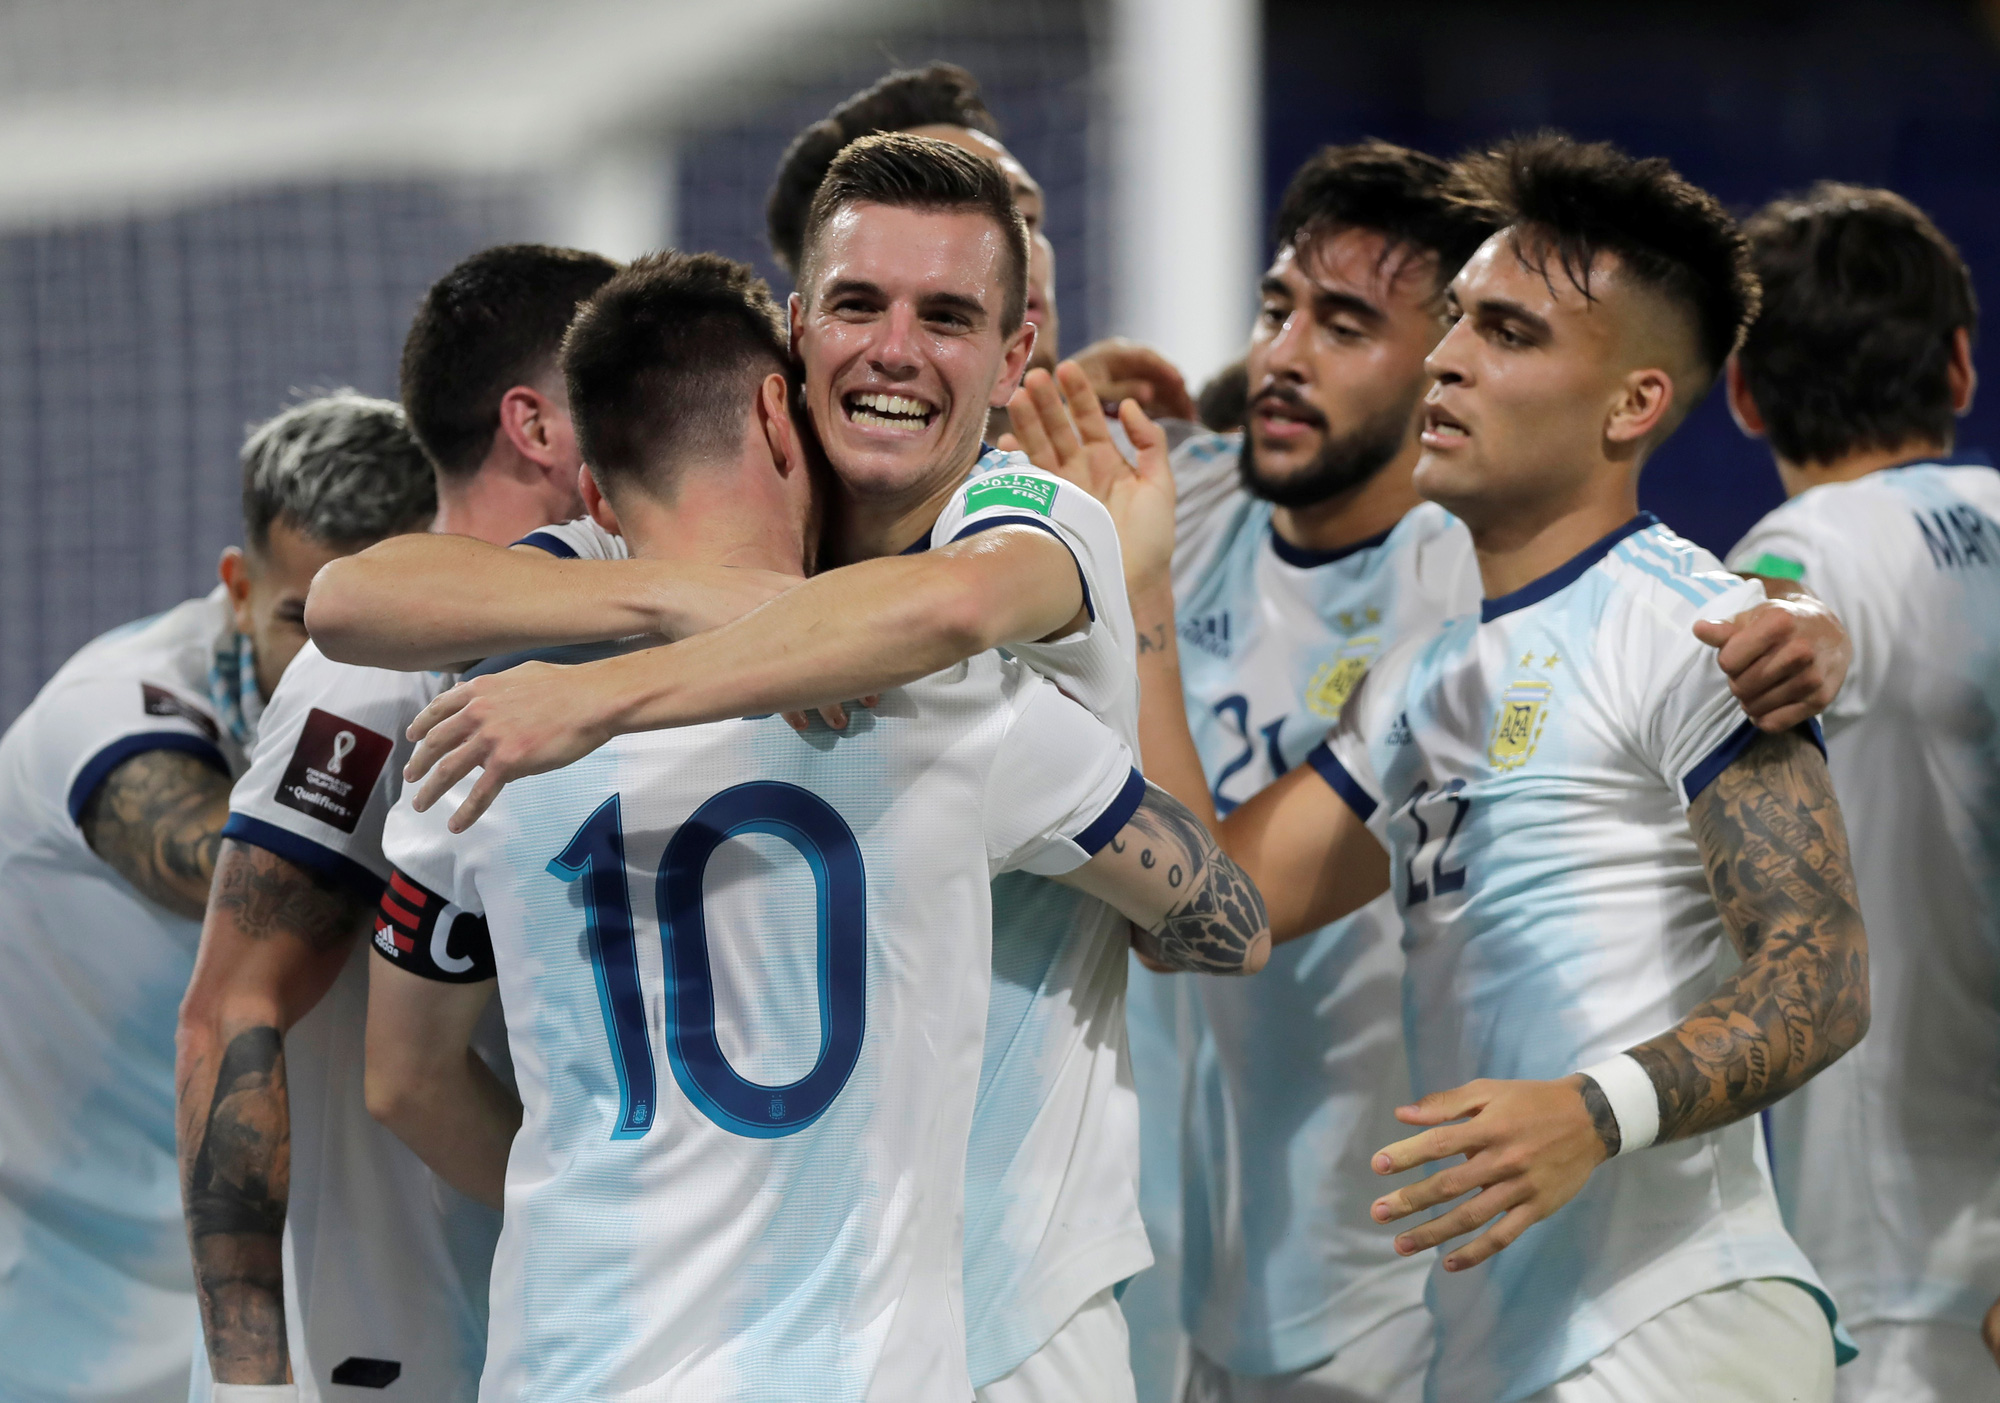 Thưởng thức những hình ảnh đẹp nhất của Messi khi đại diện cho đội tuyển Argentina tham gia giải đấu Nam Mỹ và đạt vị trí đầu bảng. Xem lại những bàn thắng và màn trình diễn ấn tượng của \